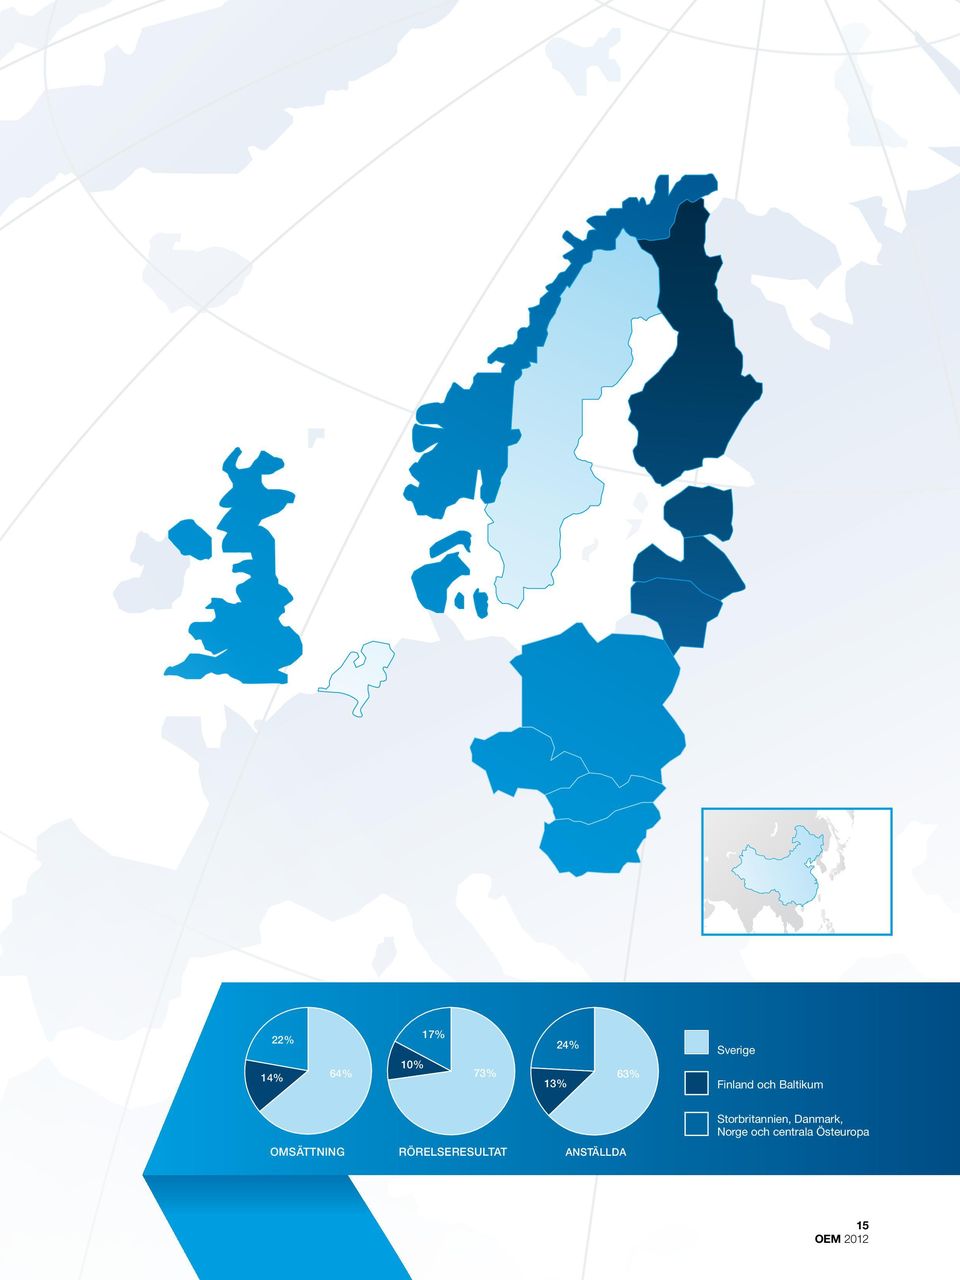 Storbritannien, Danmark, Norge och centrala Östeuropa 24 % 22% 17% 17% 24% 10% 10% 73% 14% 64% 73% 13% 63% RÖRELSERESULTAT Omsättning